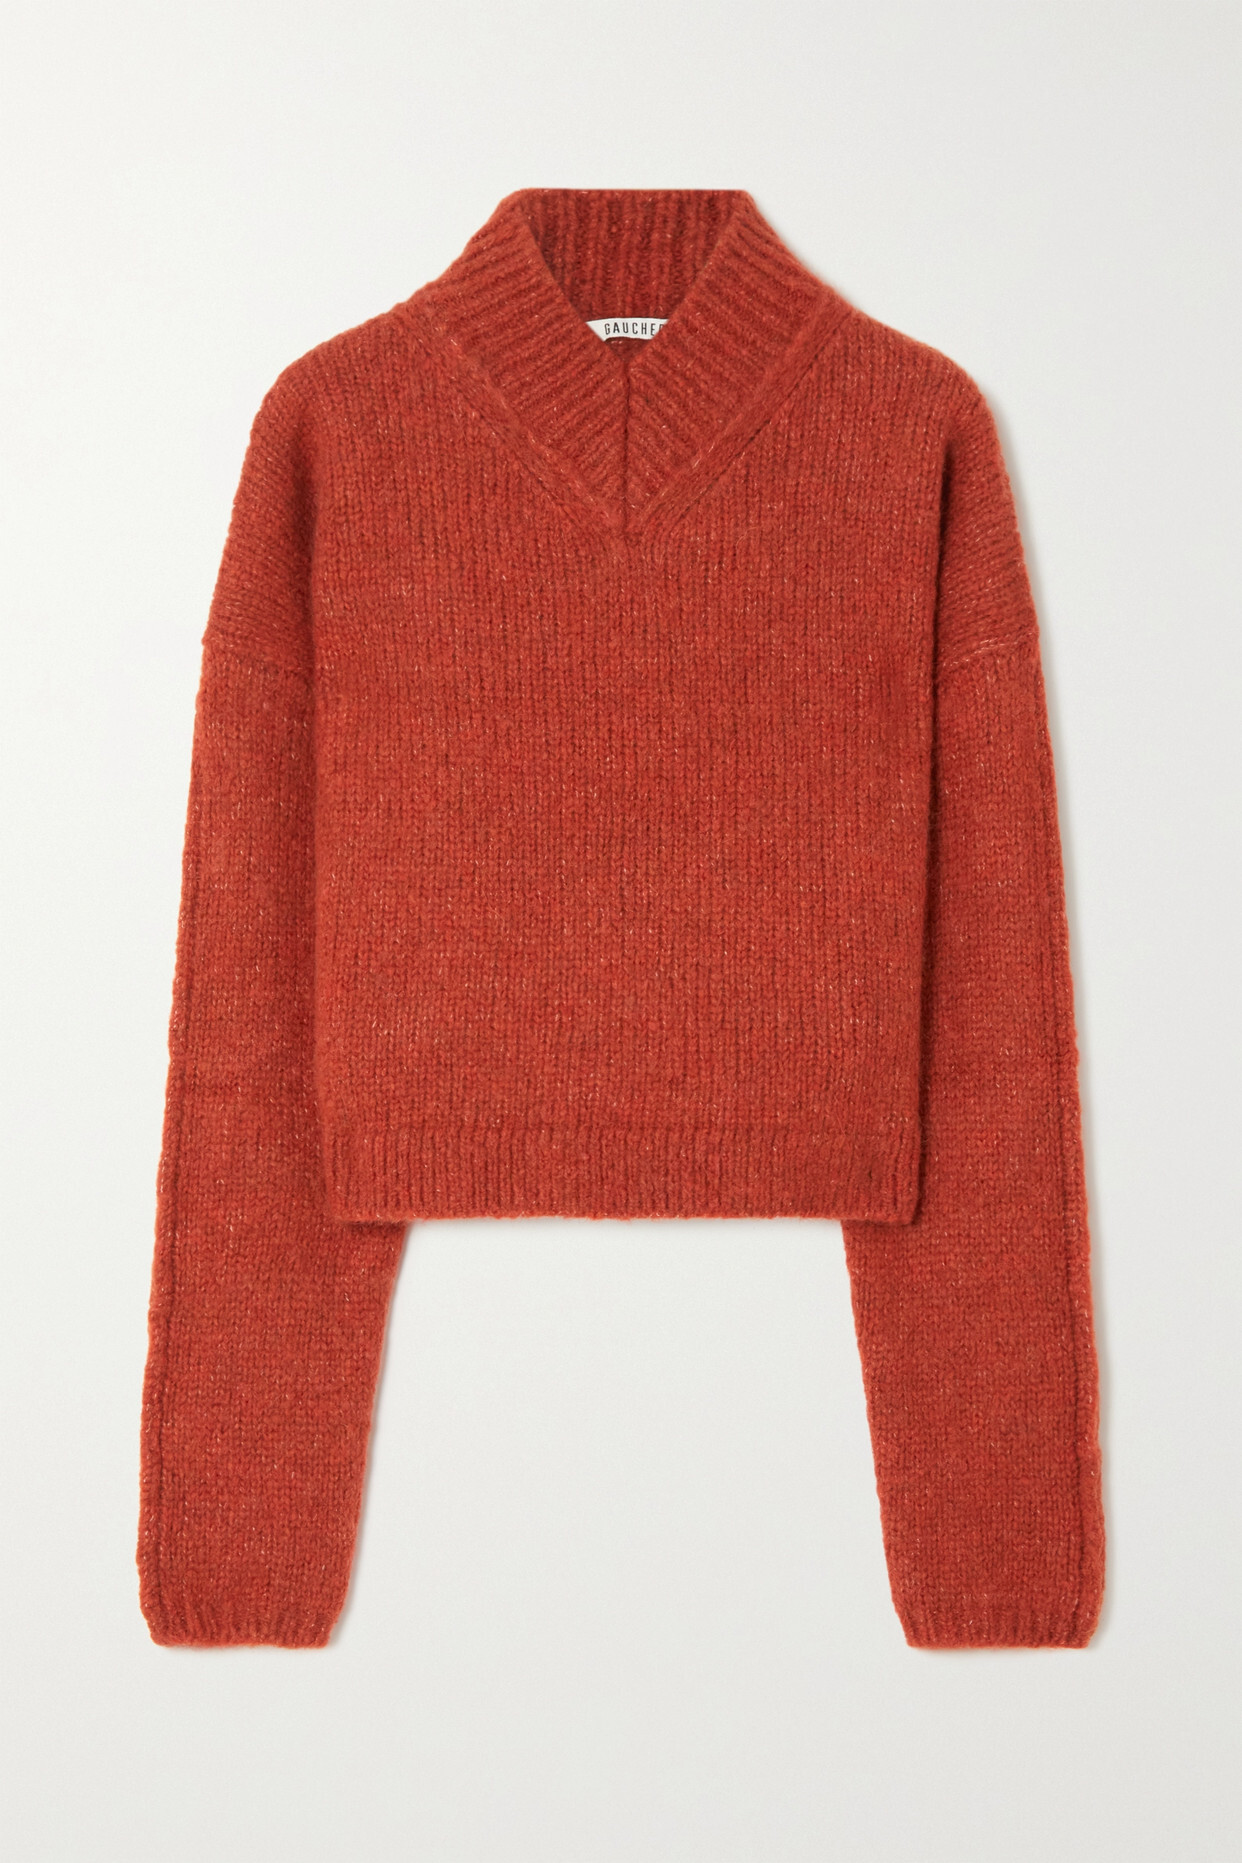 GAUCHERE - Wool-blend Sweater - Brown